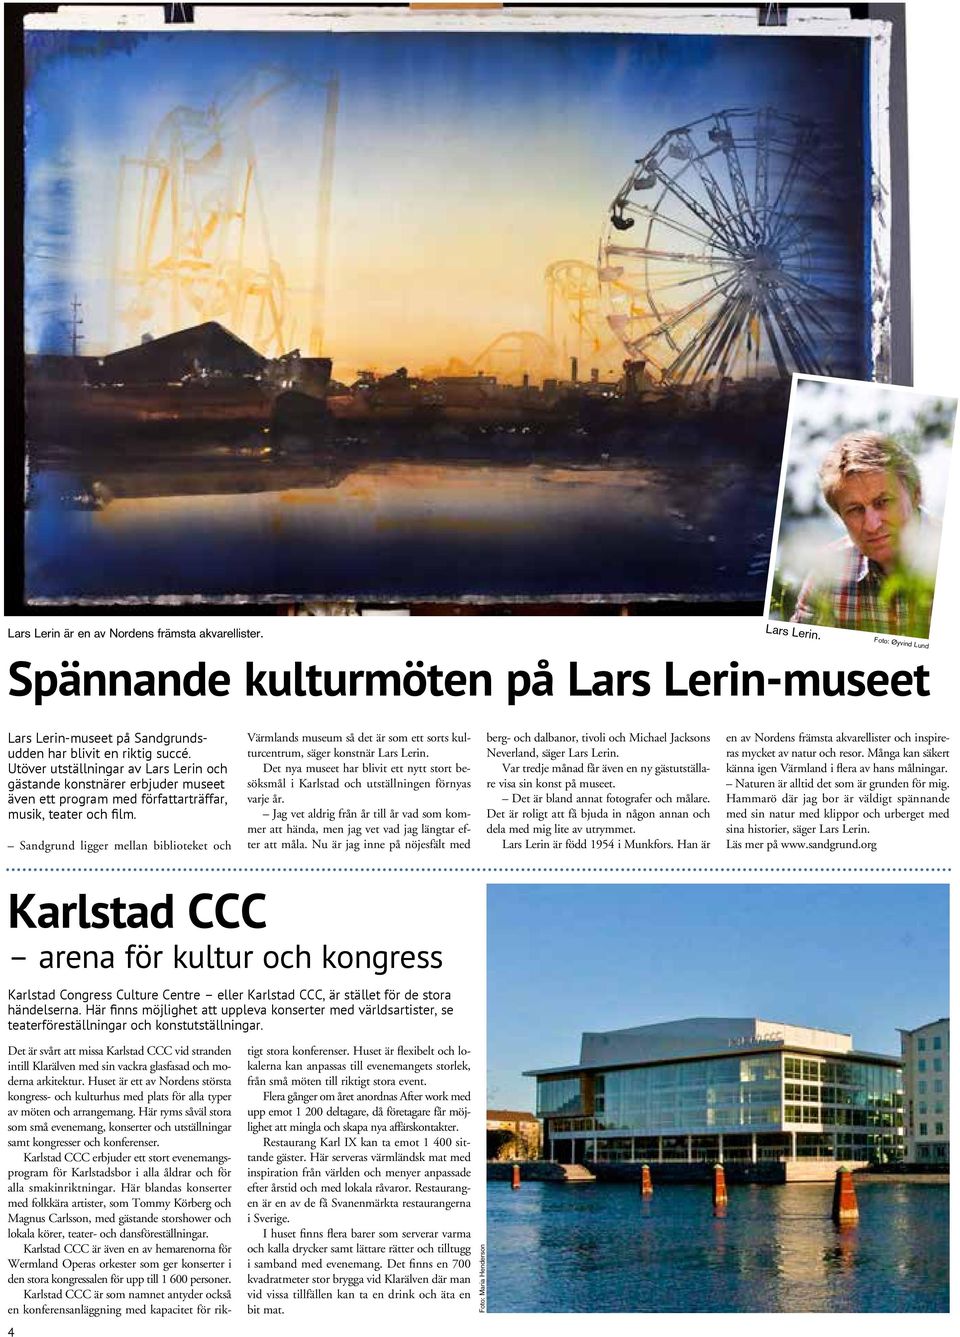 Sandgrund ligger mellan biblioteket och Värmlands museum så det är som ett sorts kulturcentrum, säger konstnär Lars Lerin.